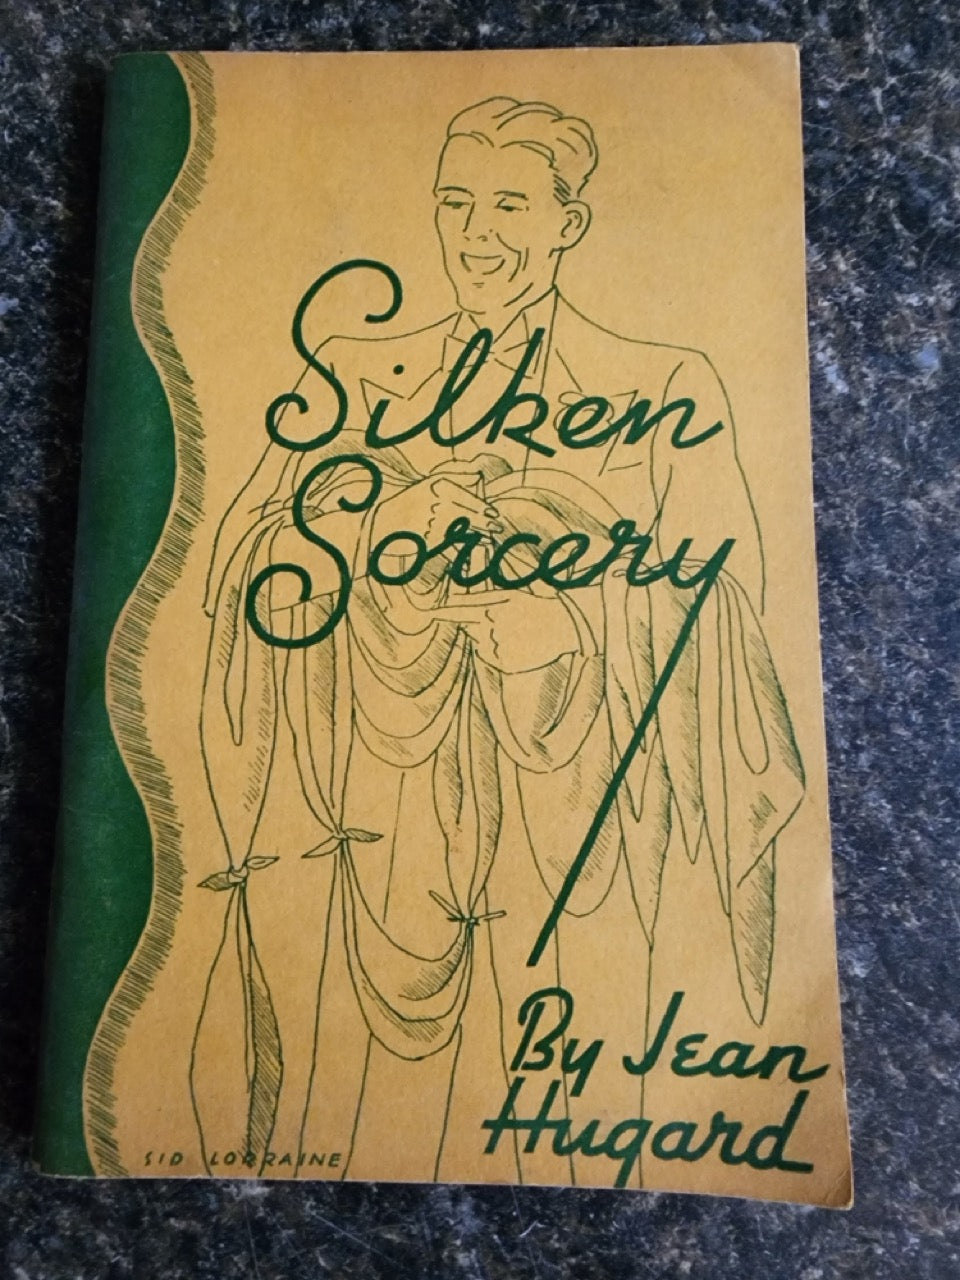 Silken Sorcery - Jean Hugard